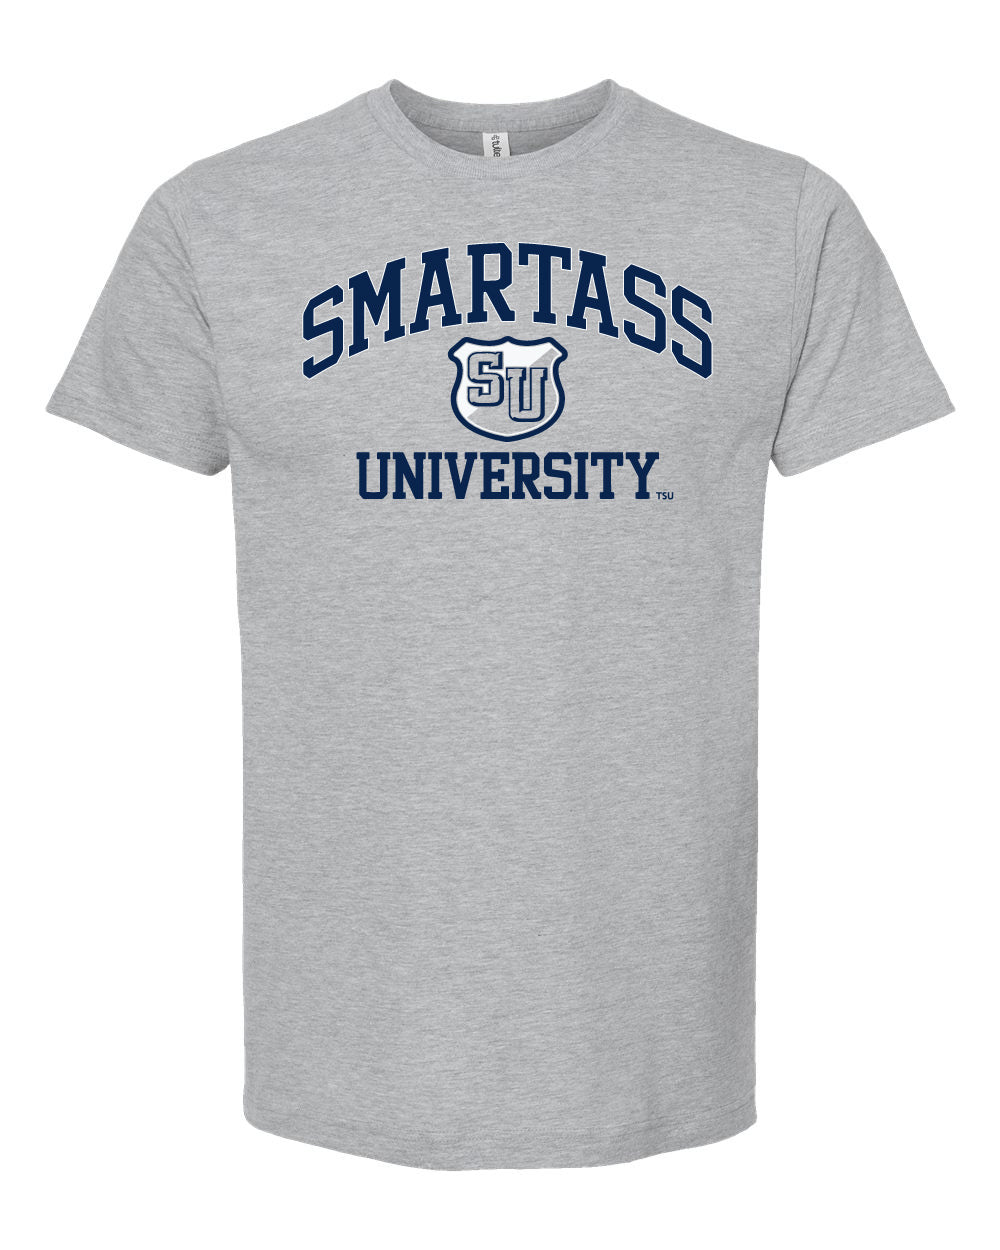 Men's Smart Ass University T Shirt